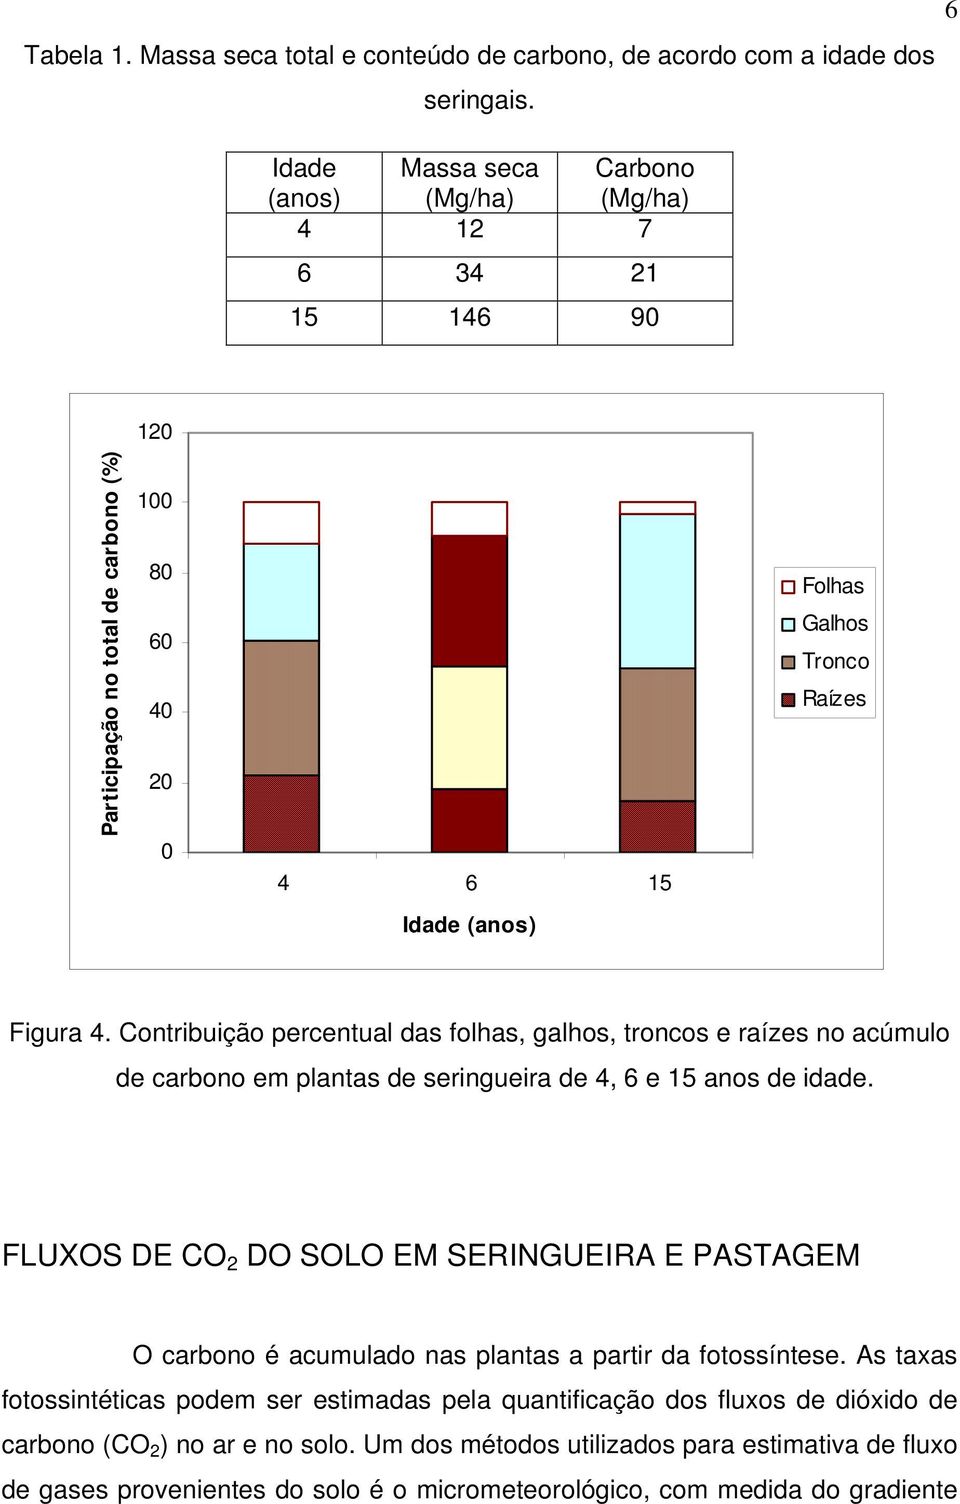 Contribuição percentual das folhas, galhos, troncos e raízes no acúmulo de carbono em plantas de seringueira de 4, 6 e 15 anos de idade.